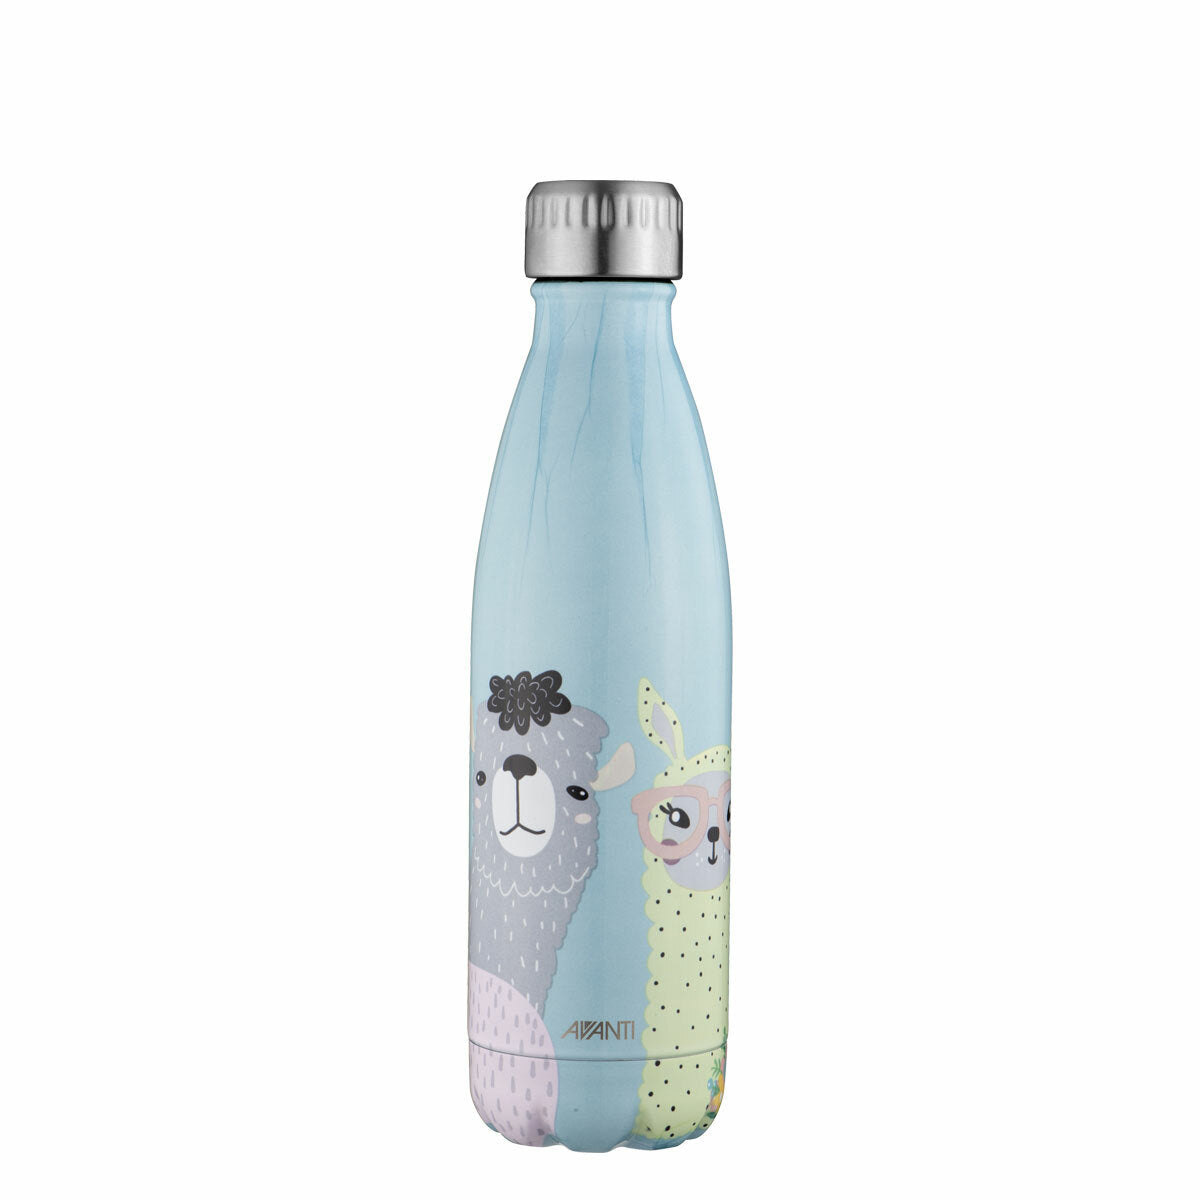 Avanti Fluid Vacuum Bottle 500ml - Mama Llama Mint